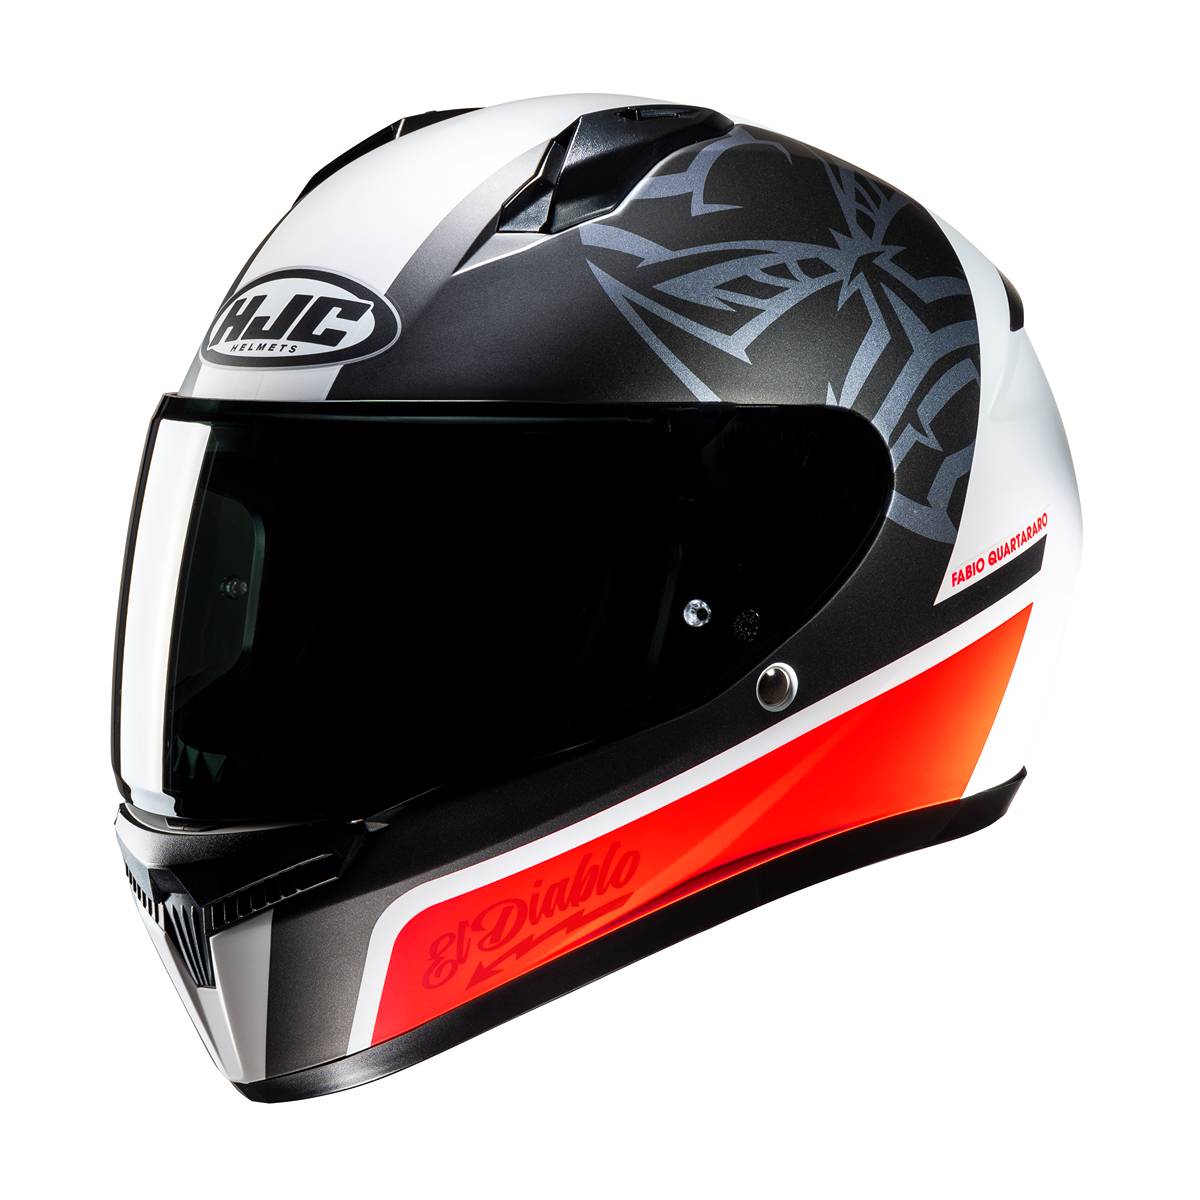 Image of EU HJC C10 Fabio Quartararo 20 Full Face Helmet White Red Taille XS